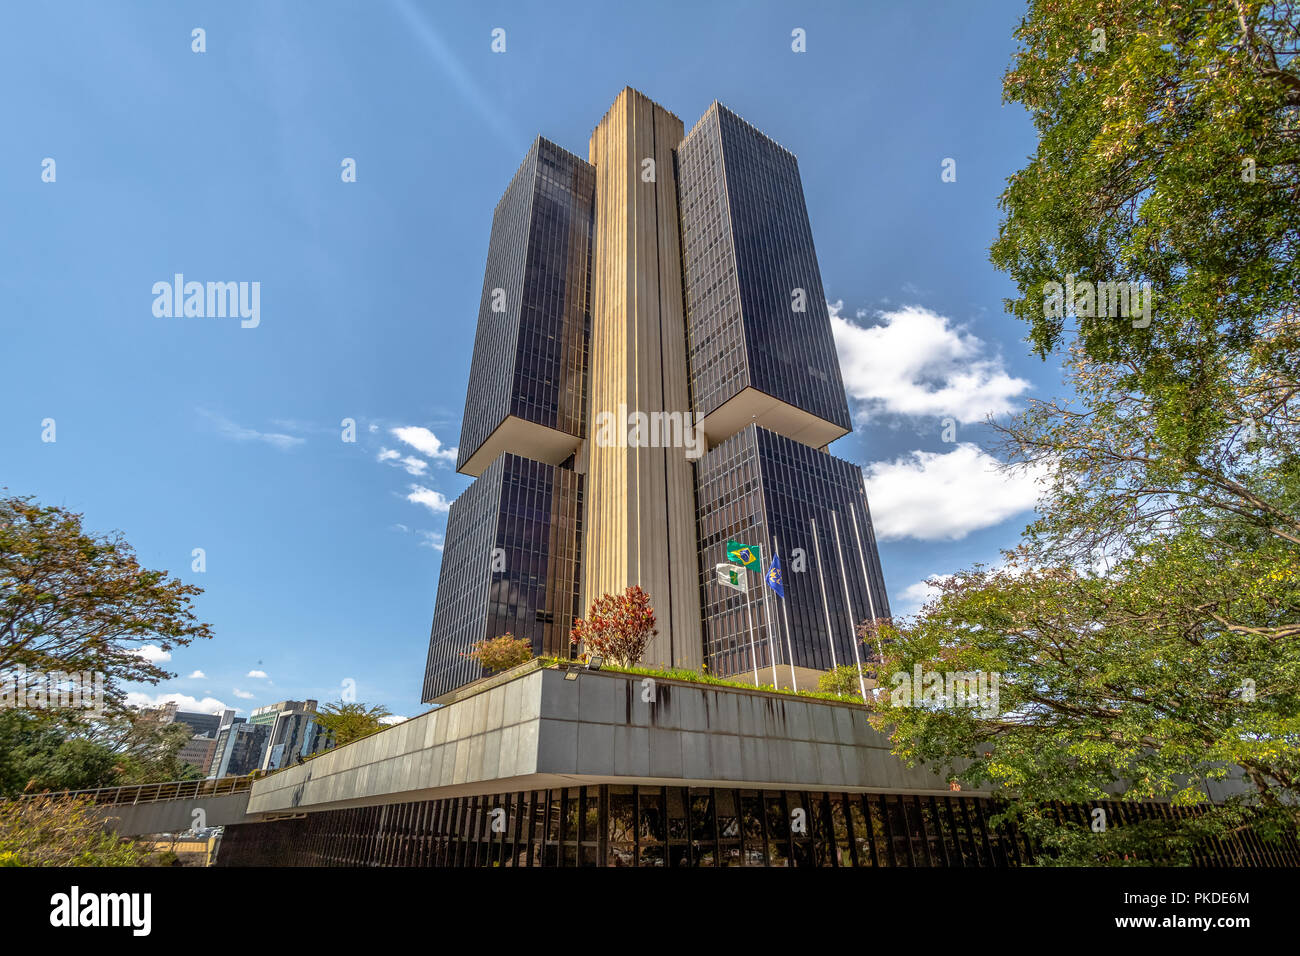 Banque centrale du Brésil - Brasilia, quartier général de district fédéral, Brésil Banque D'Images